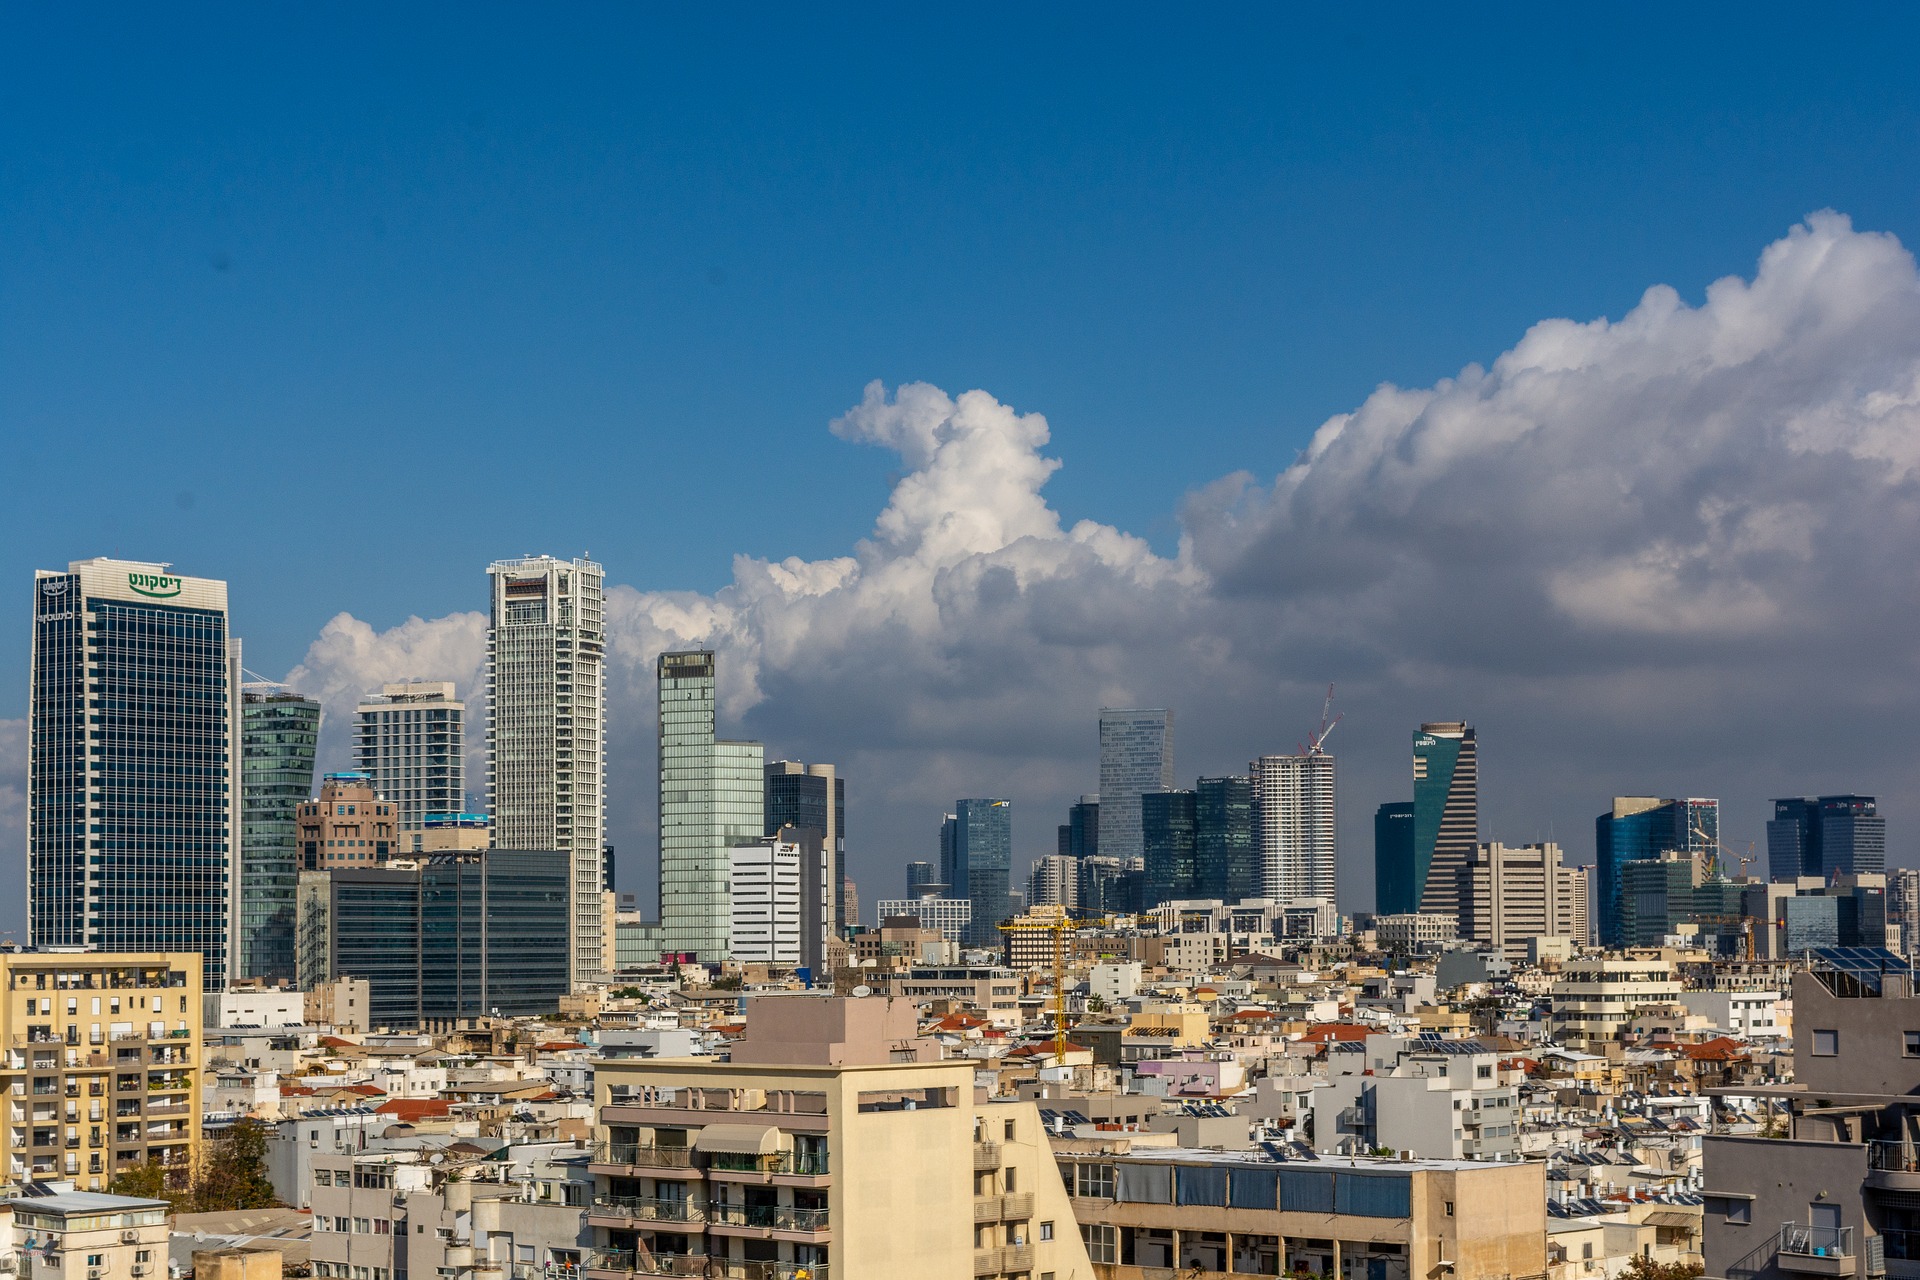 דירה למכירה בתל אביב: המדריך לבחירת דירת החלומות